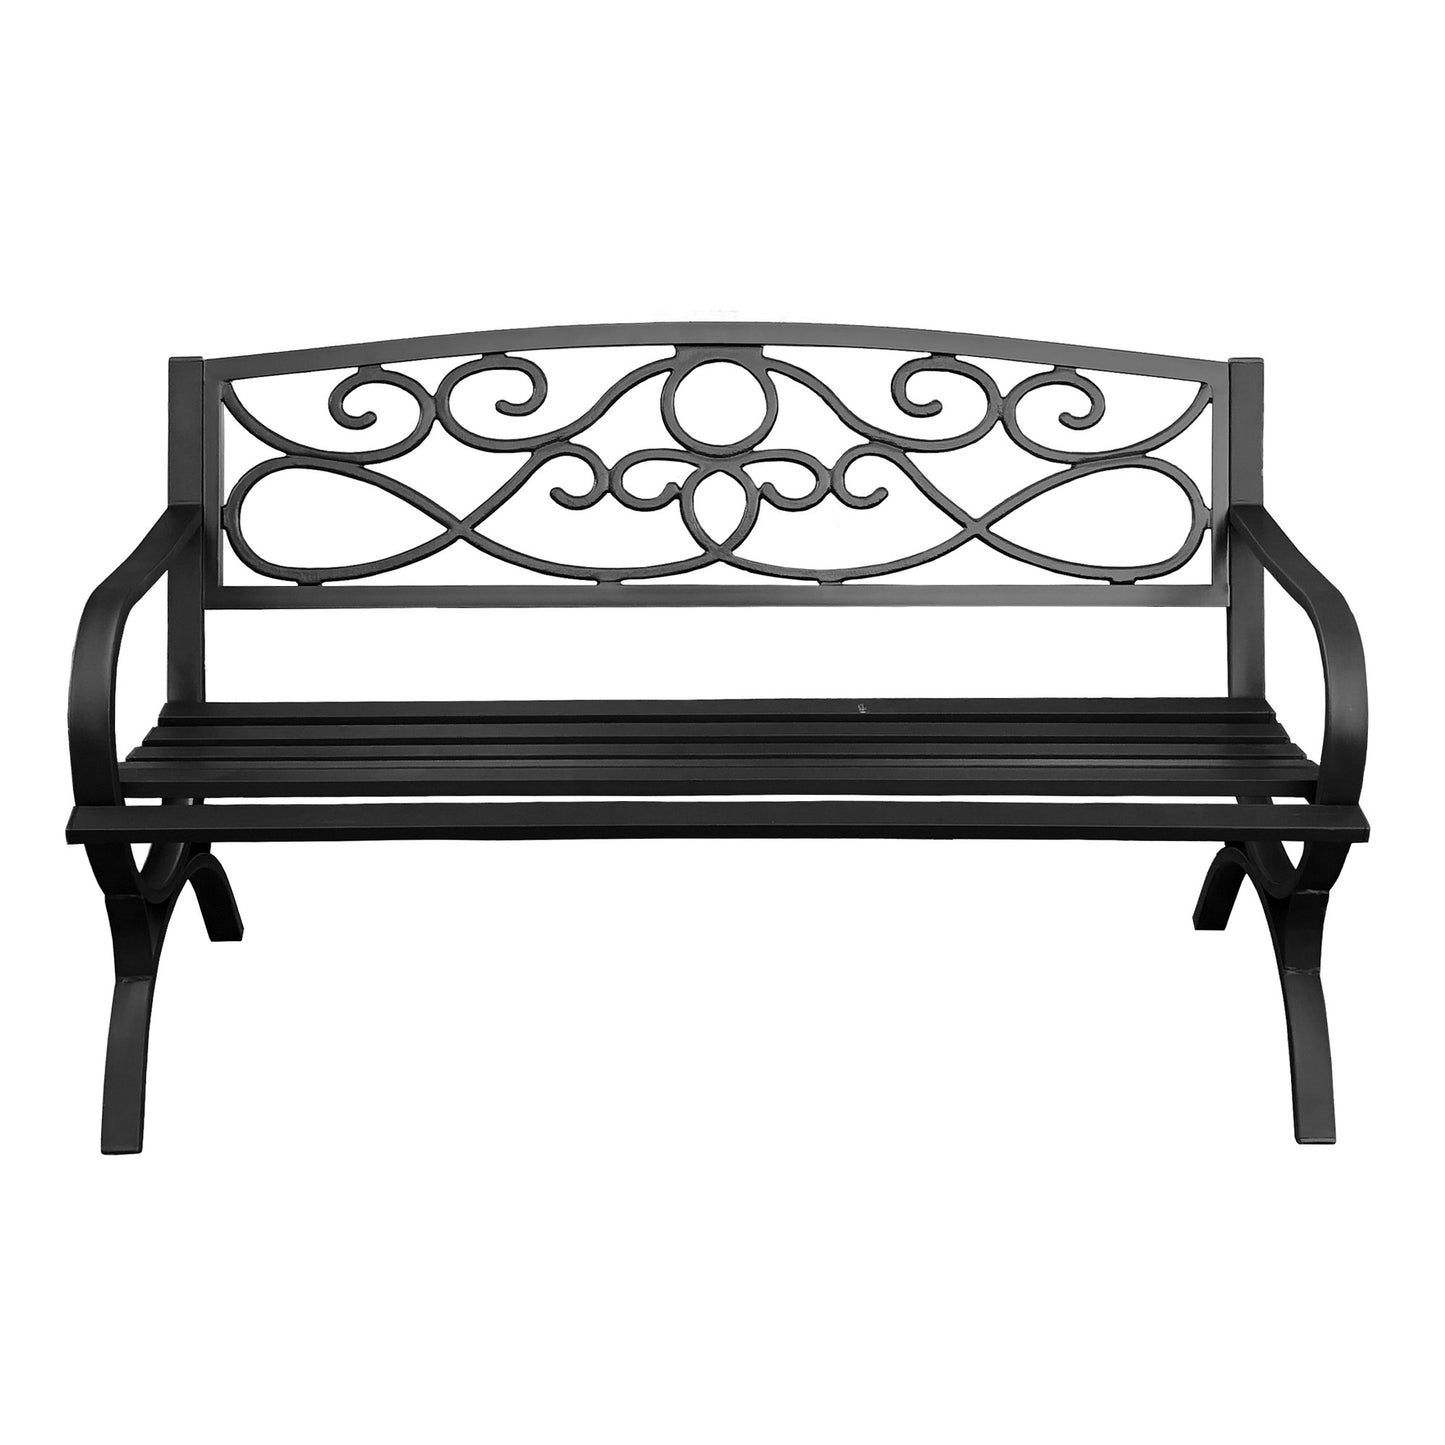 50 in. Steel Outdoor Garden Bench - Black